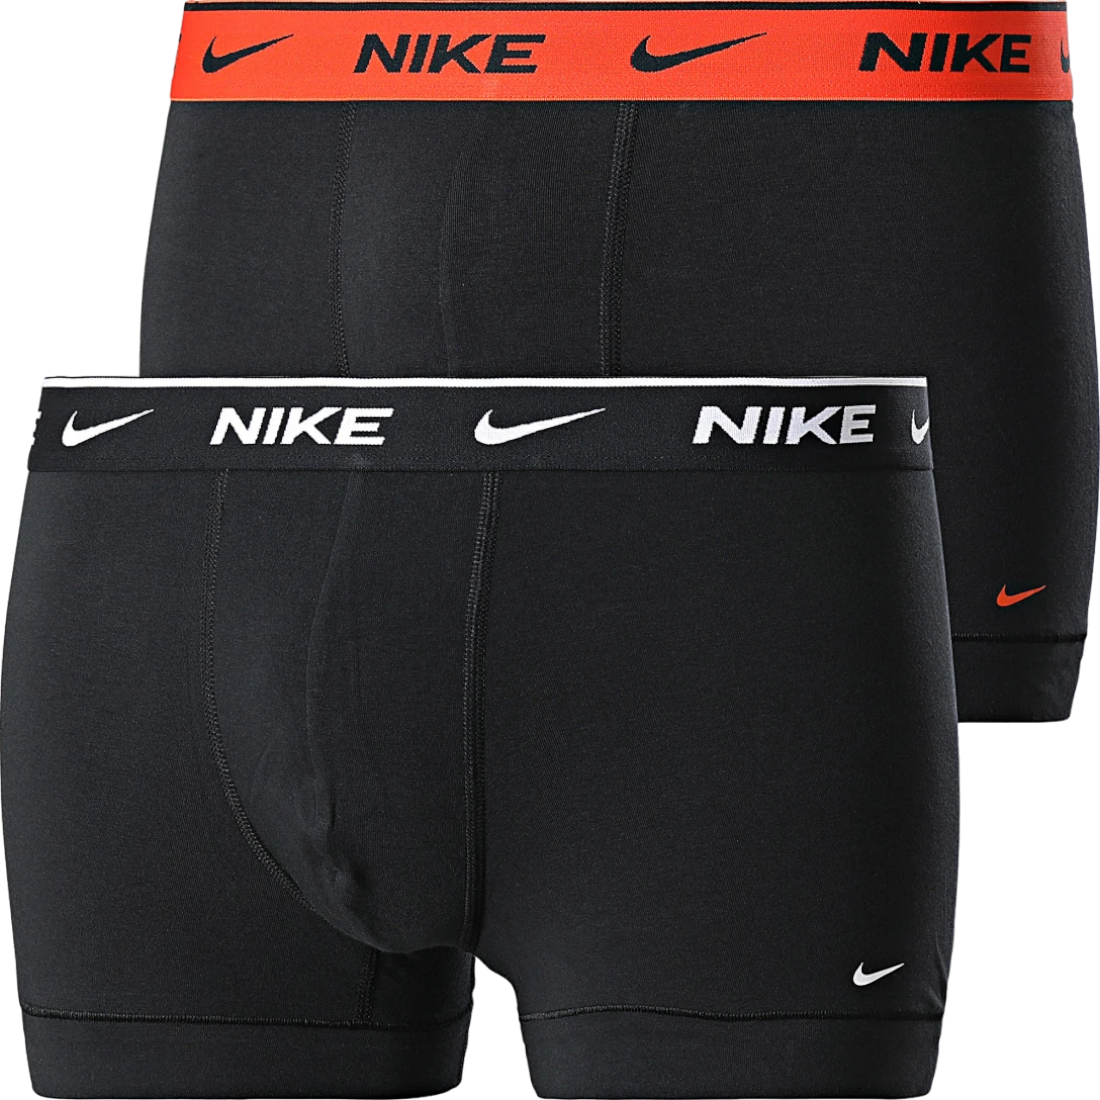 Bokserit Nike Cotton Trunk 2 pcs